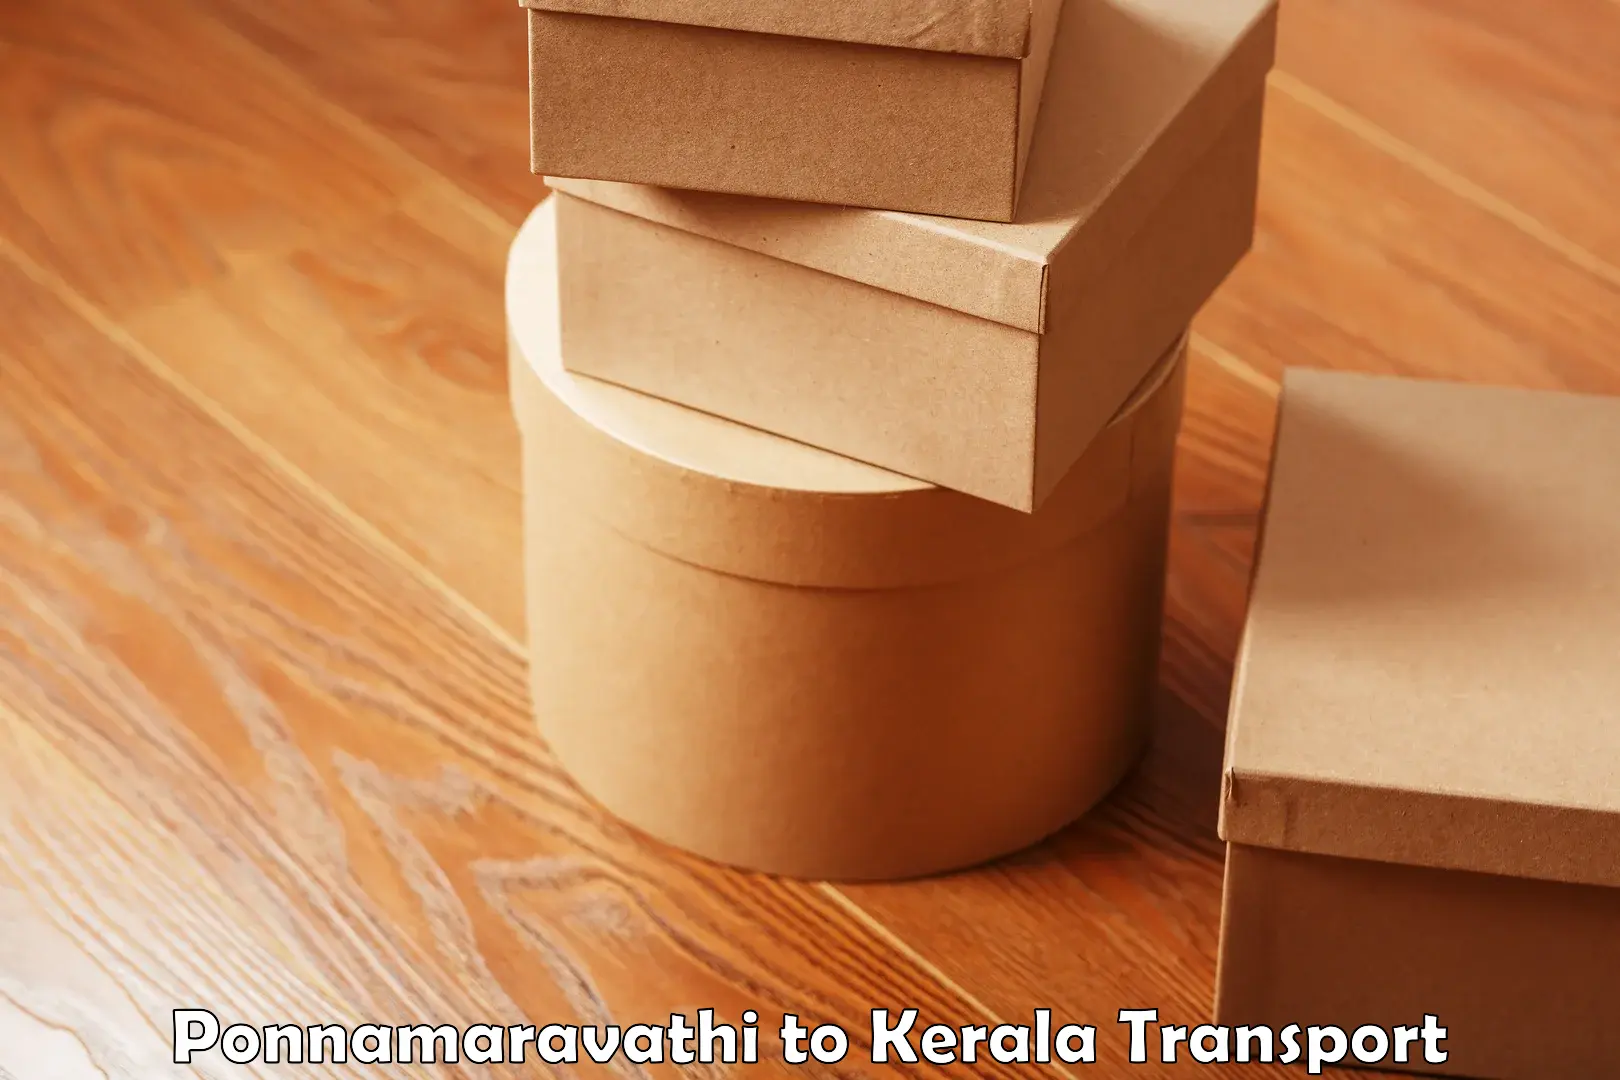 Delivery service Ponnamaravathi to Kakkayam